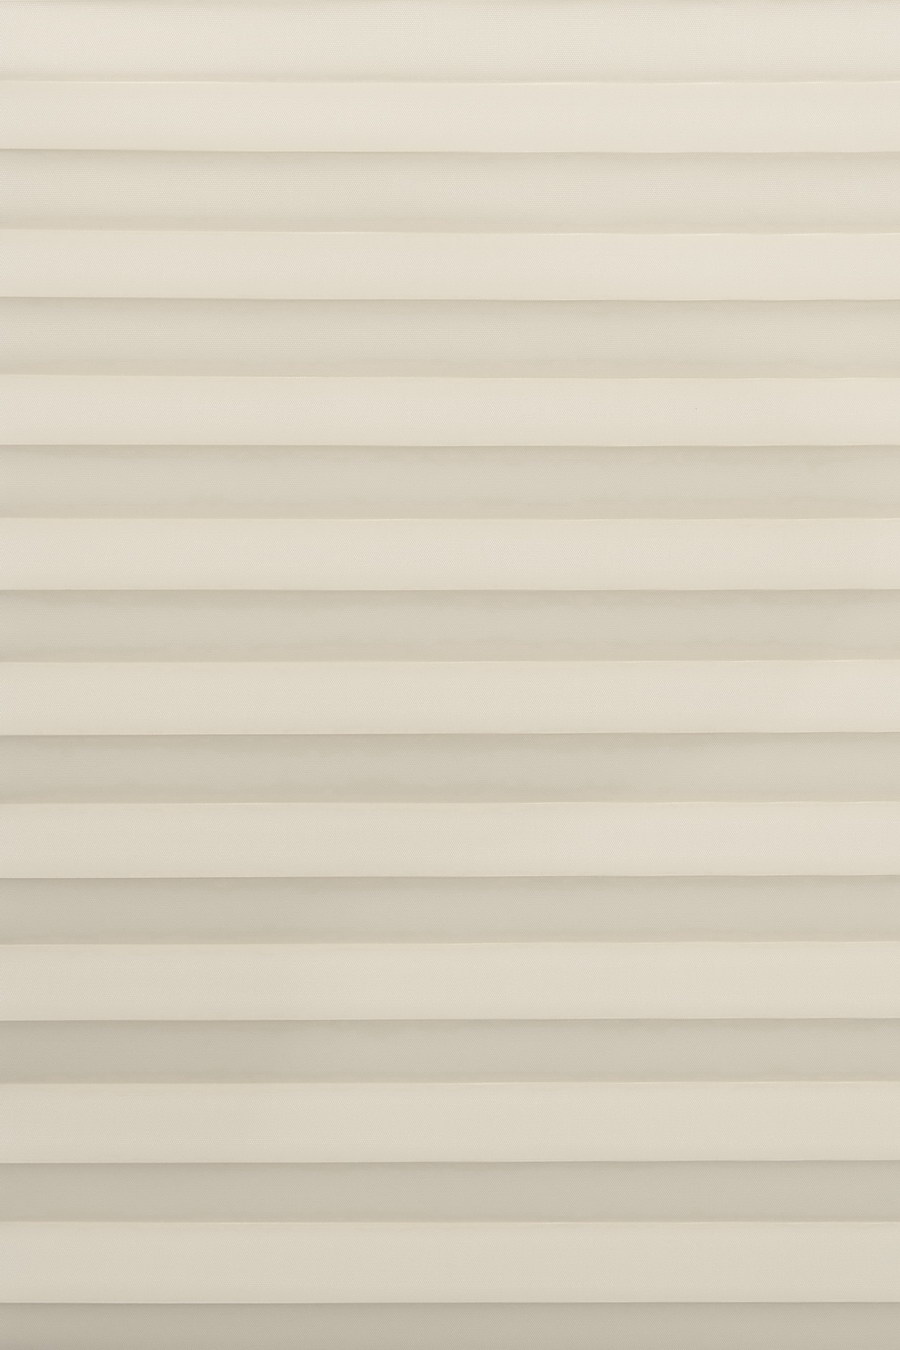 Ткань PALADO PERLMUTT whisper-white 20201 для штор плиссе